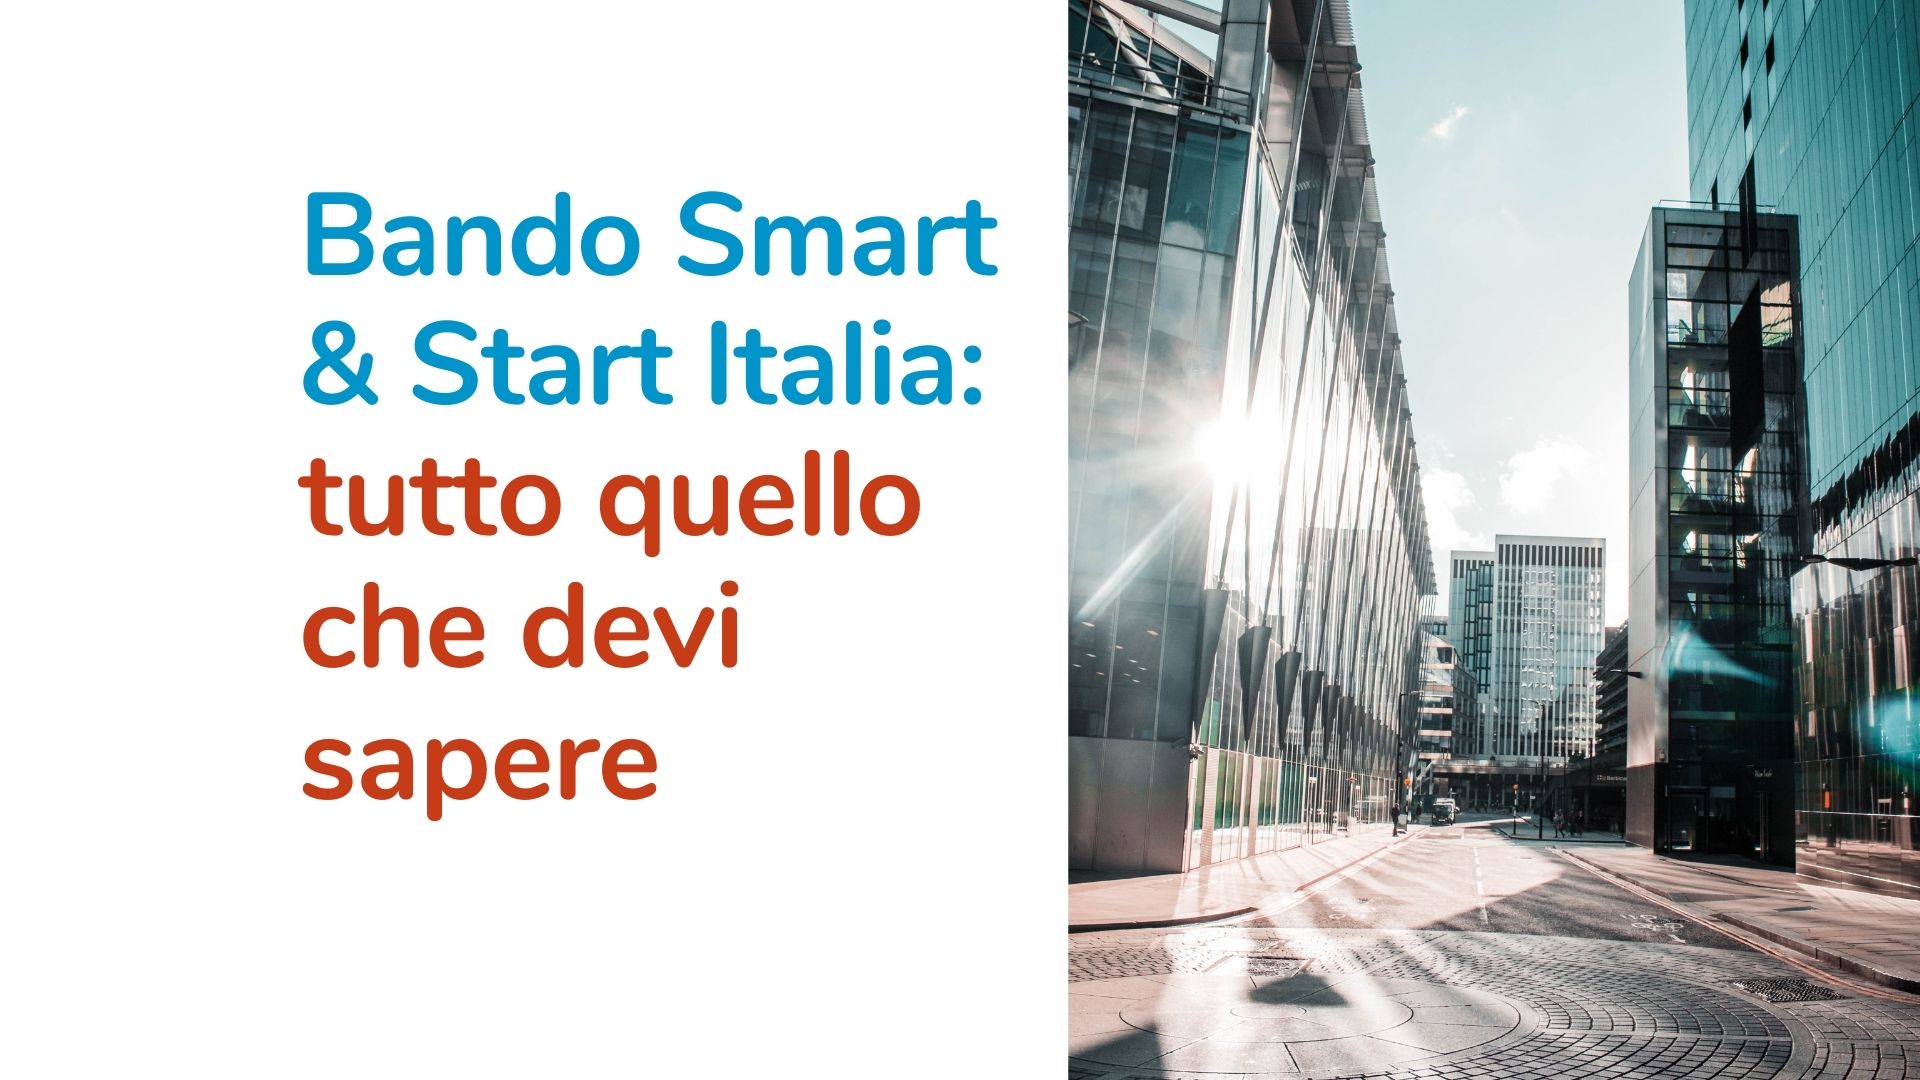 Bando Smart & Start Italia: tutto quello che devi sapere